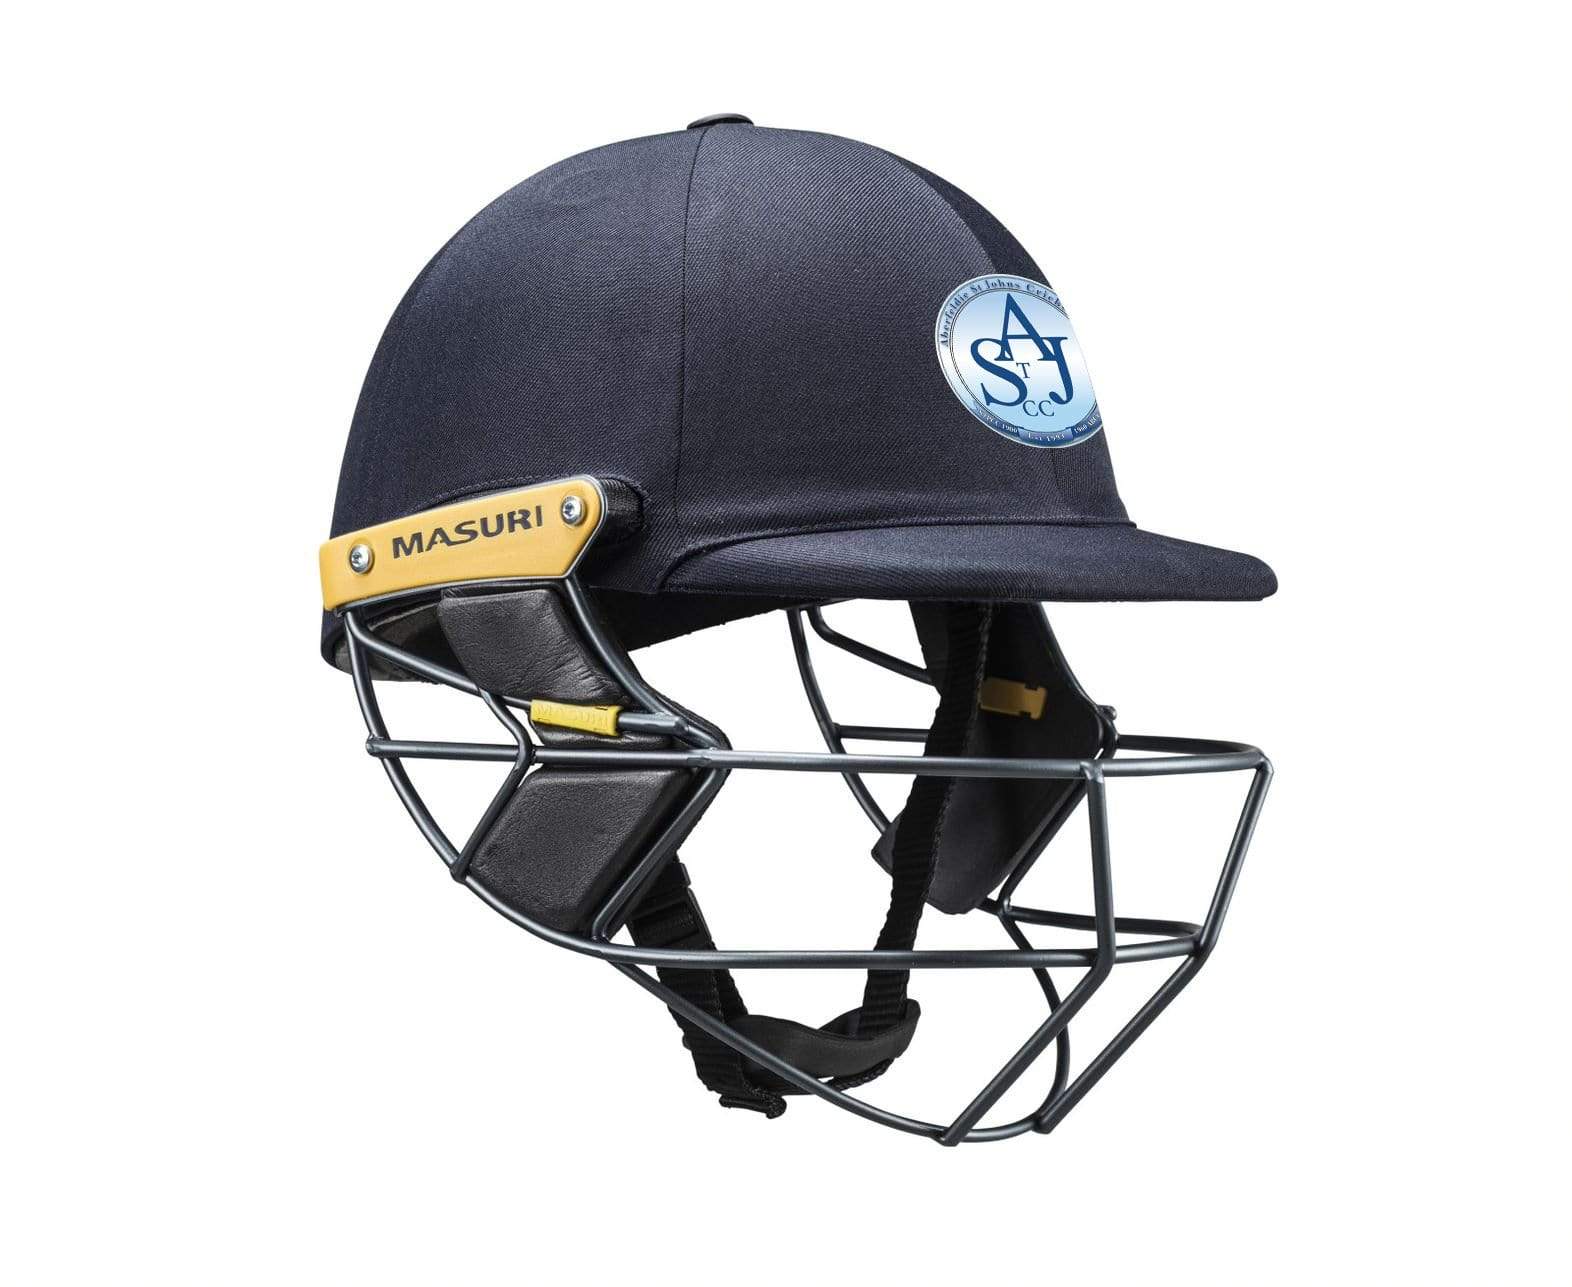 Masuri Club Helmet Aberfeldie St John Cricket Club Helmet